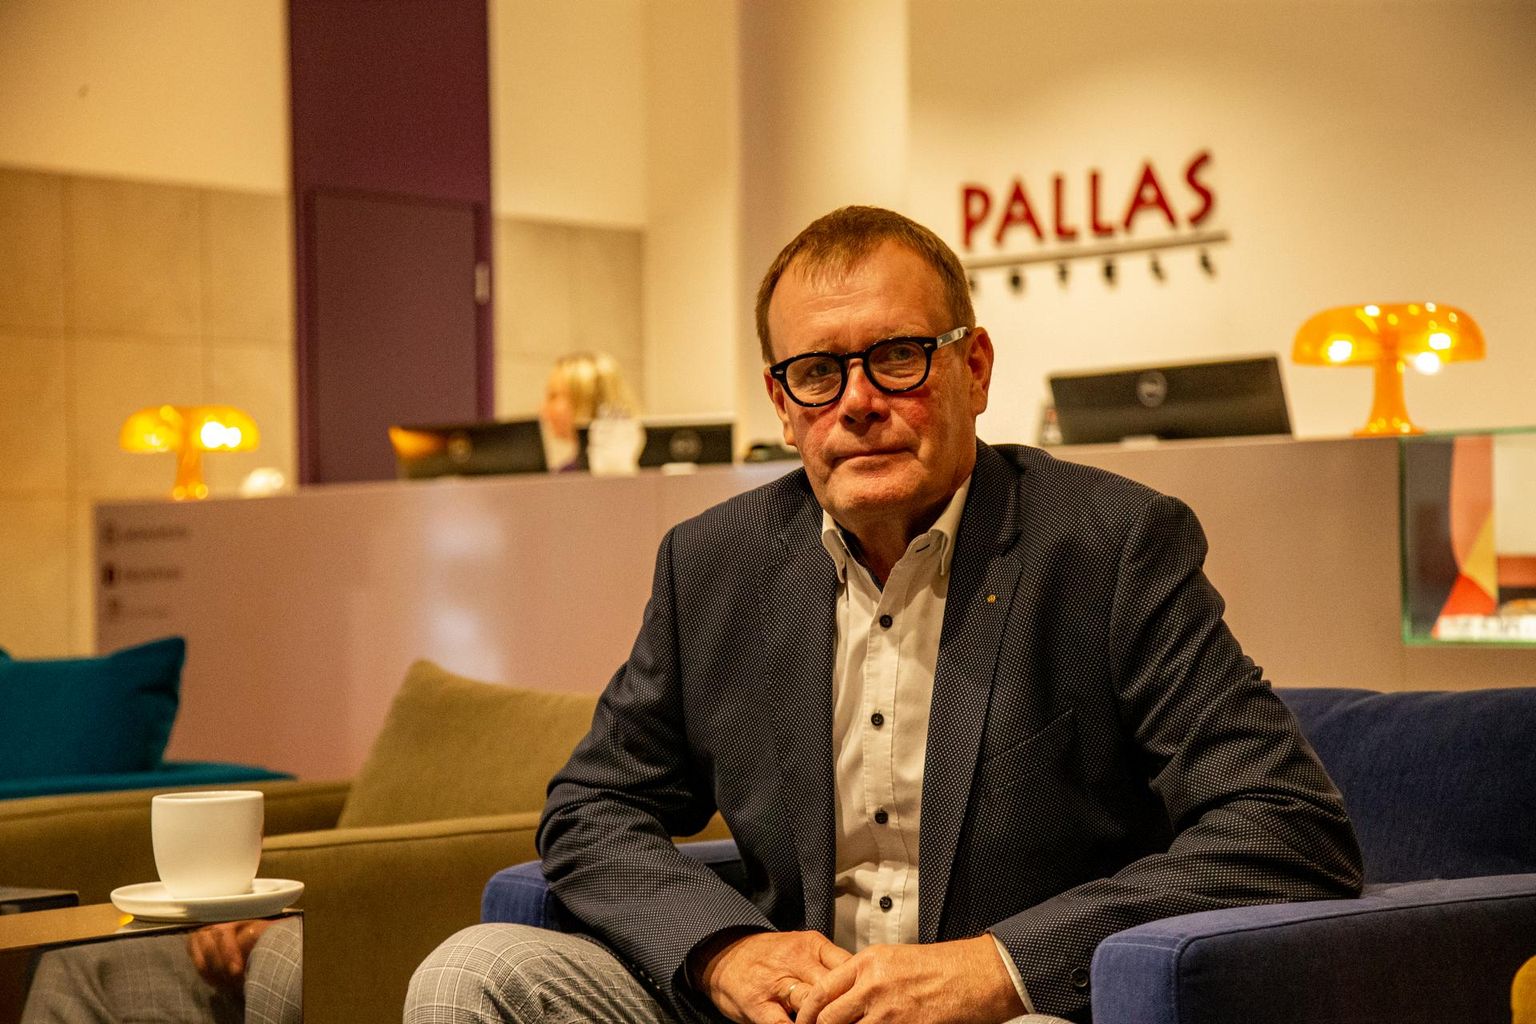 Владелец тартуских отелей Pallas и Sophia Верни Лоодмаа считает, что правительство должно прийти на помощь бизнесменам, иначе пострадает конкурентоспособность страны.